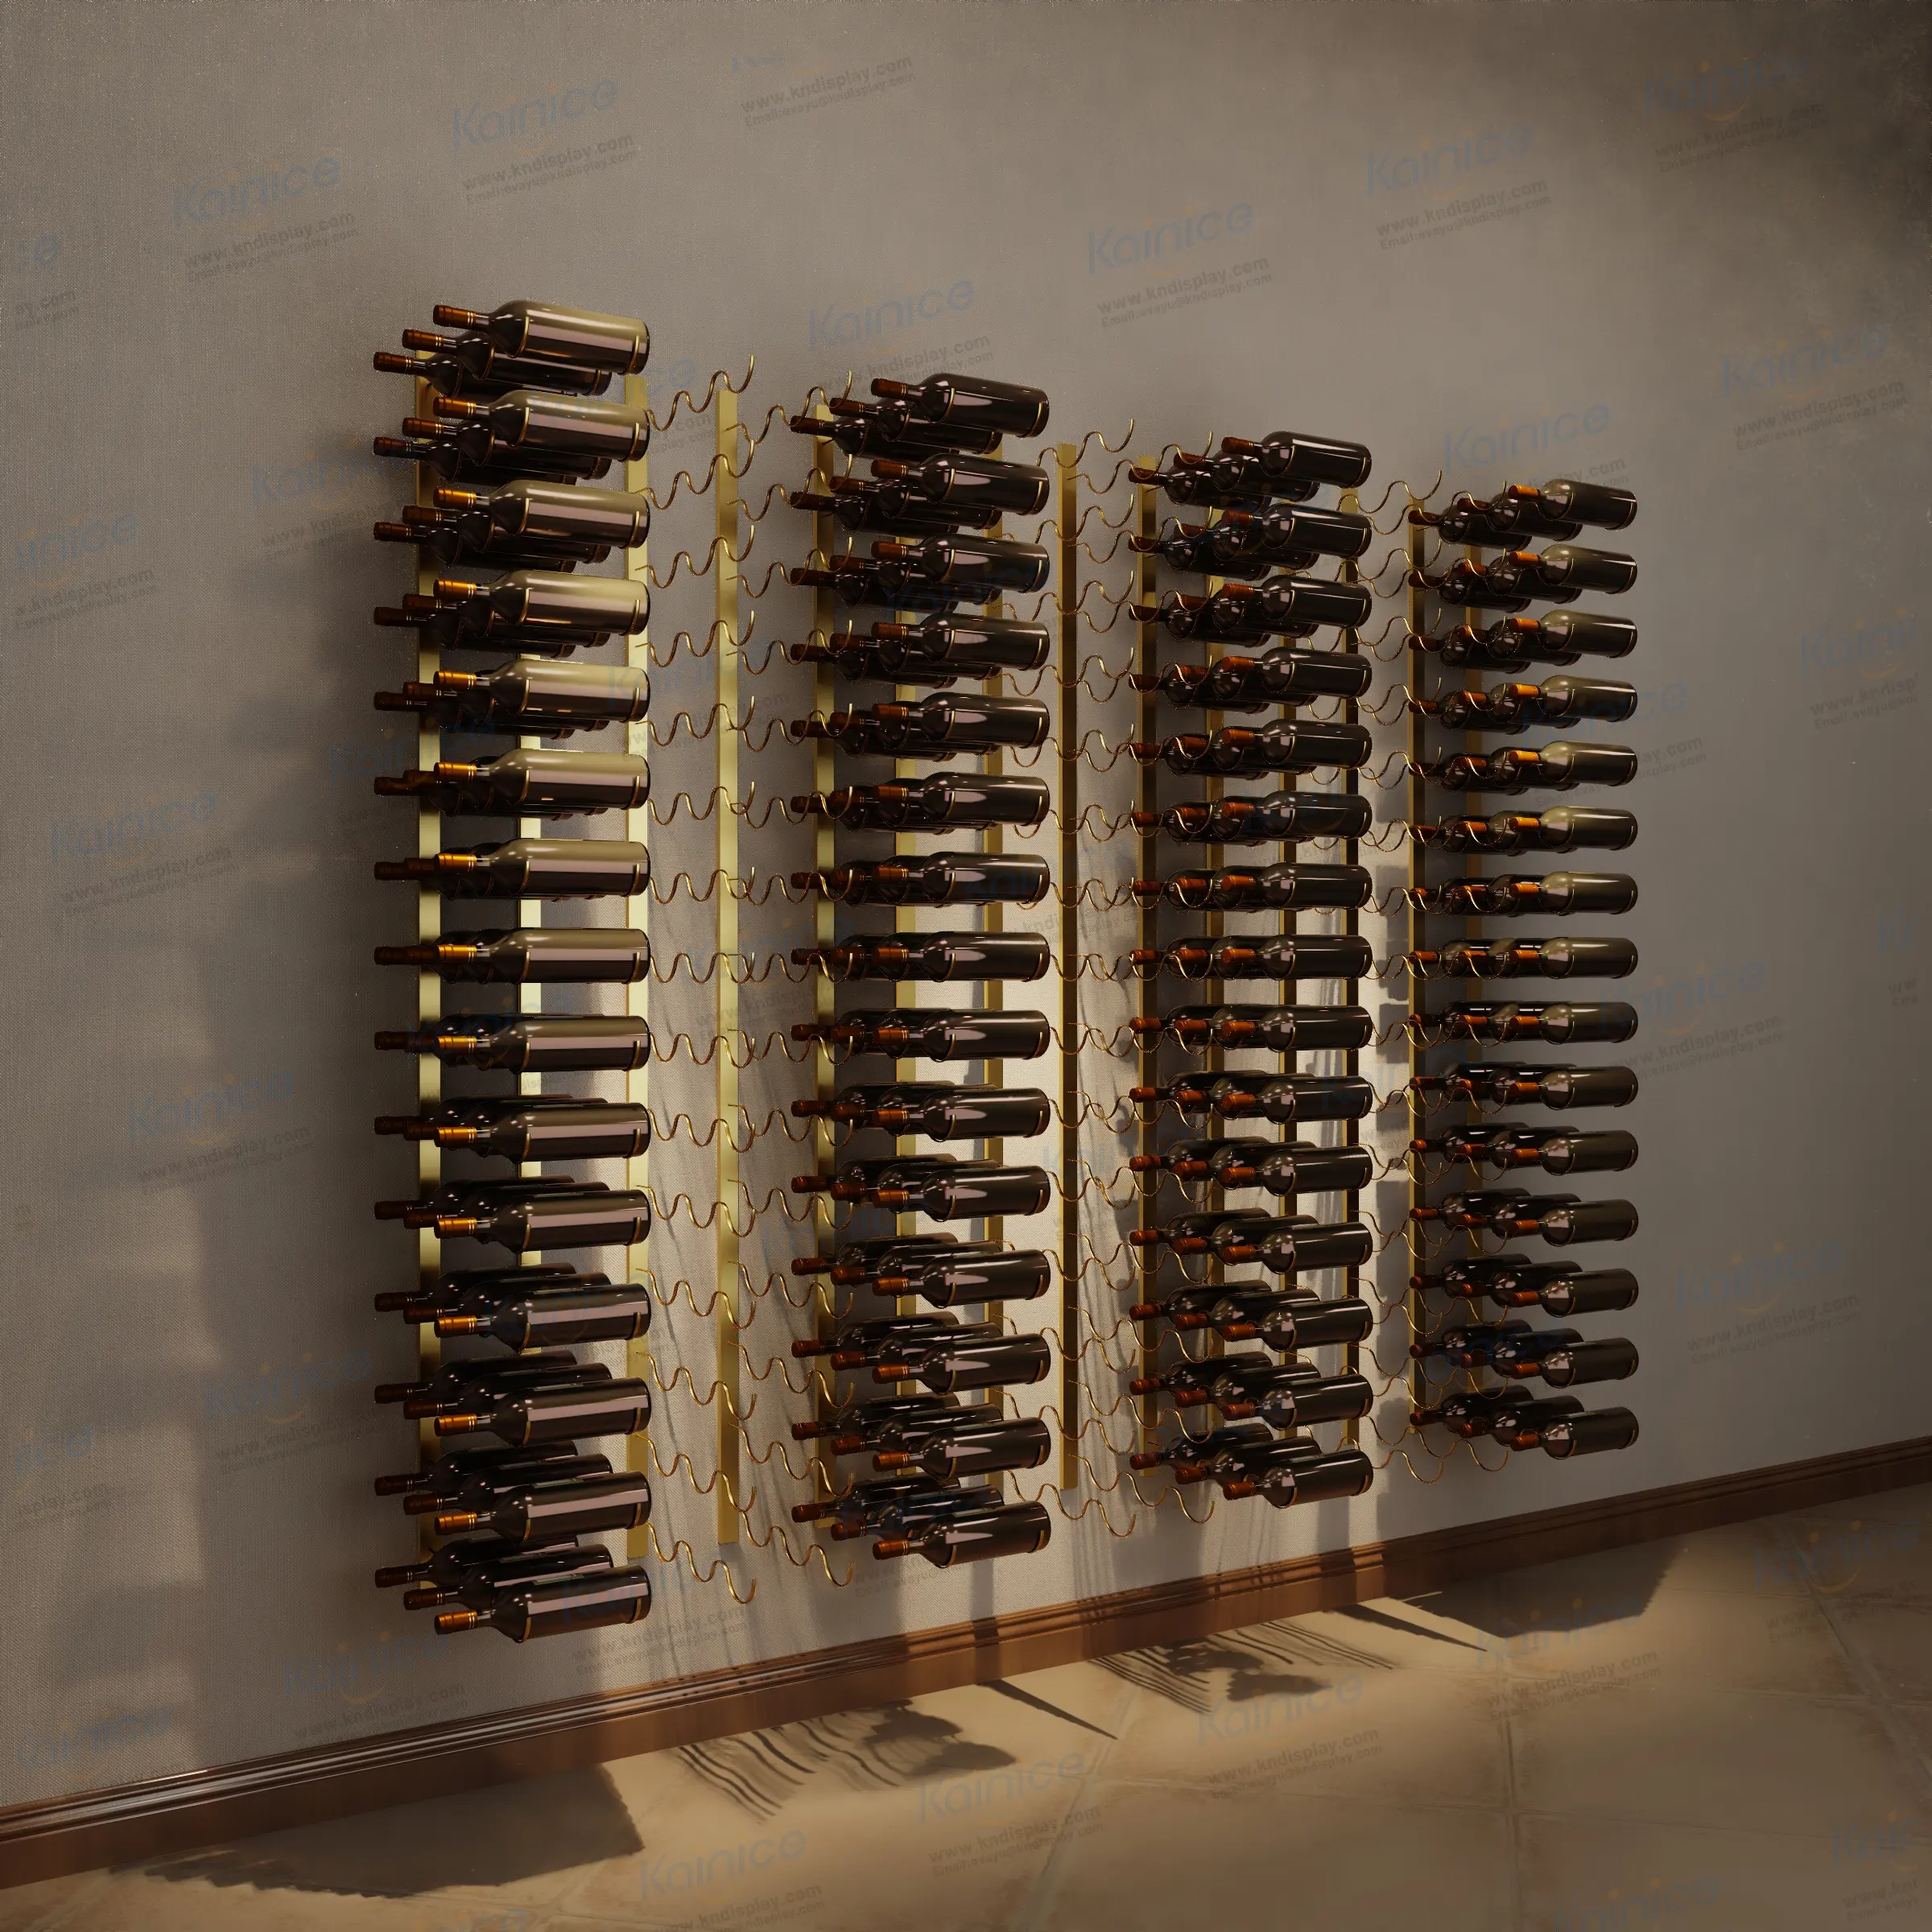 Kainice magasin d'alcools chaîne en fer câble casiers à vin une bouteille métal doré présentoir à vin mural et présentoirs de stockage